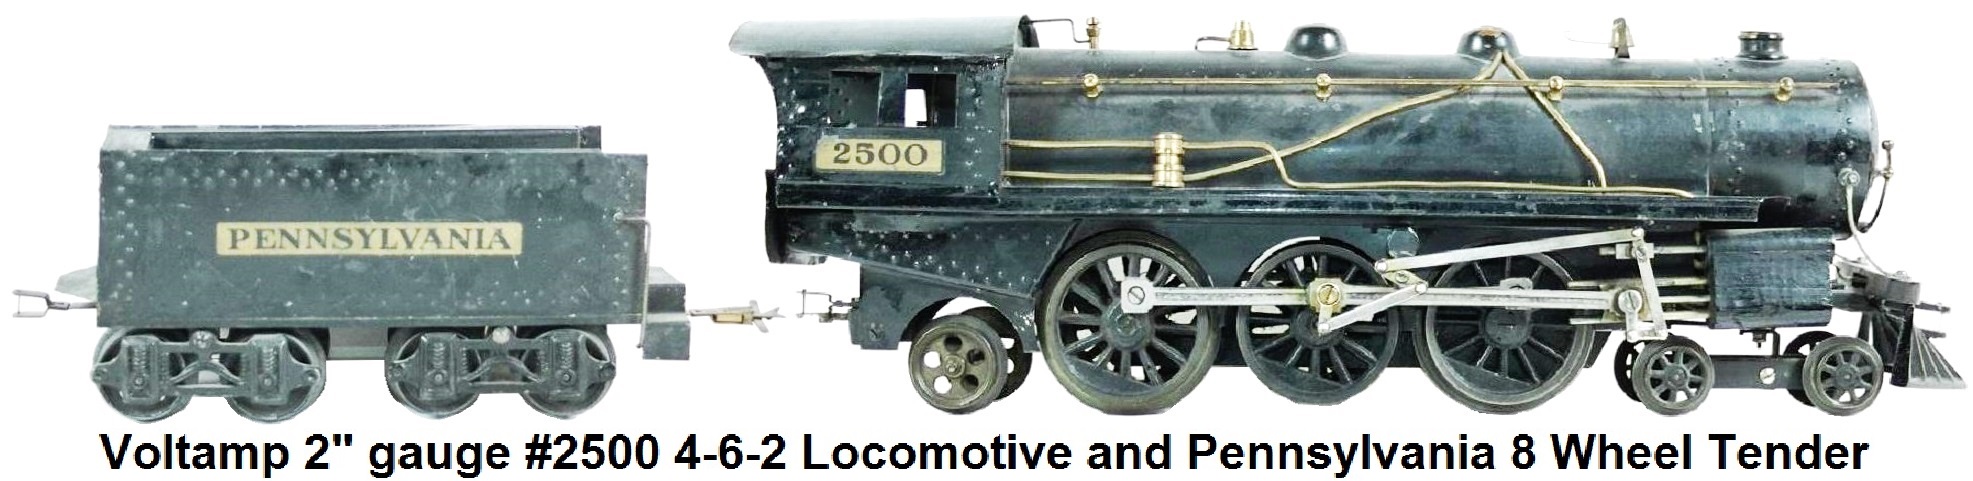 Voltamp 2 inch gauge #2500 4-6-2 Locomotive with Pennsylvania Tender